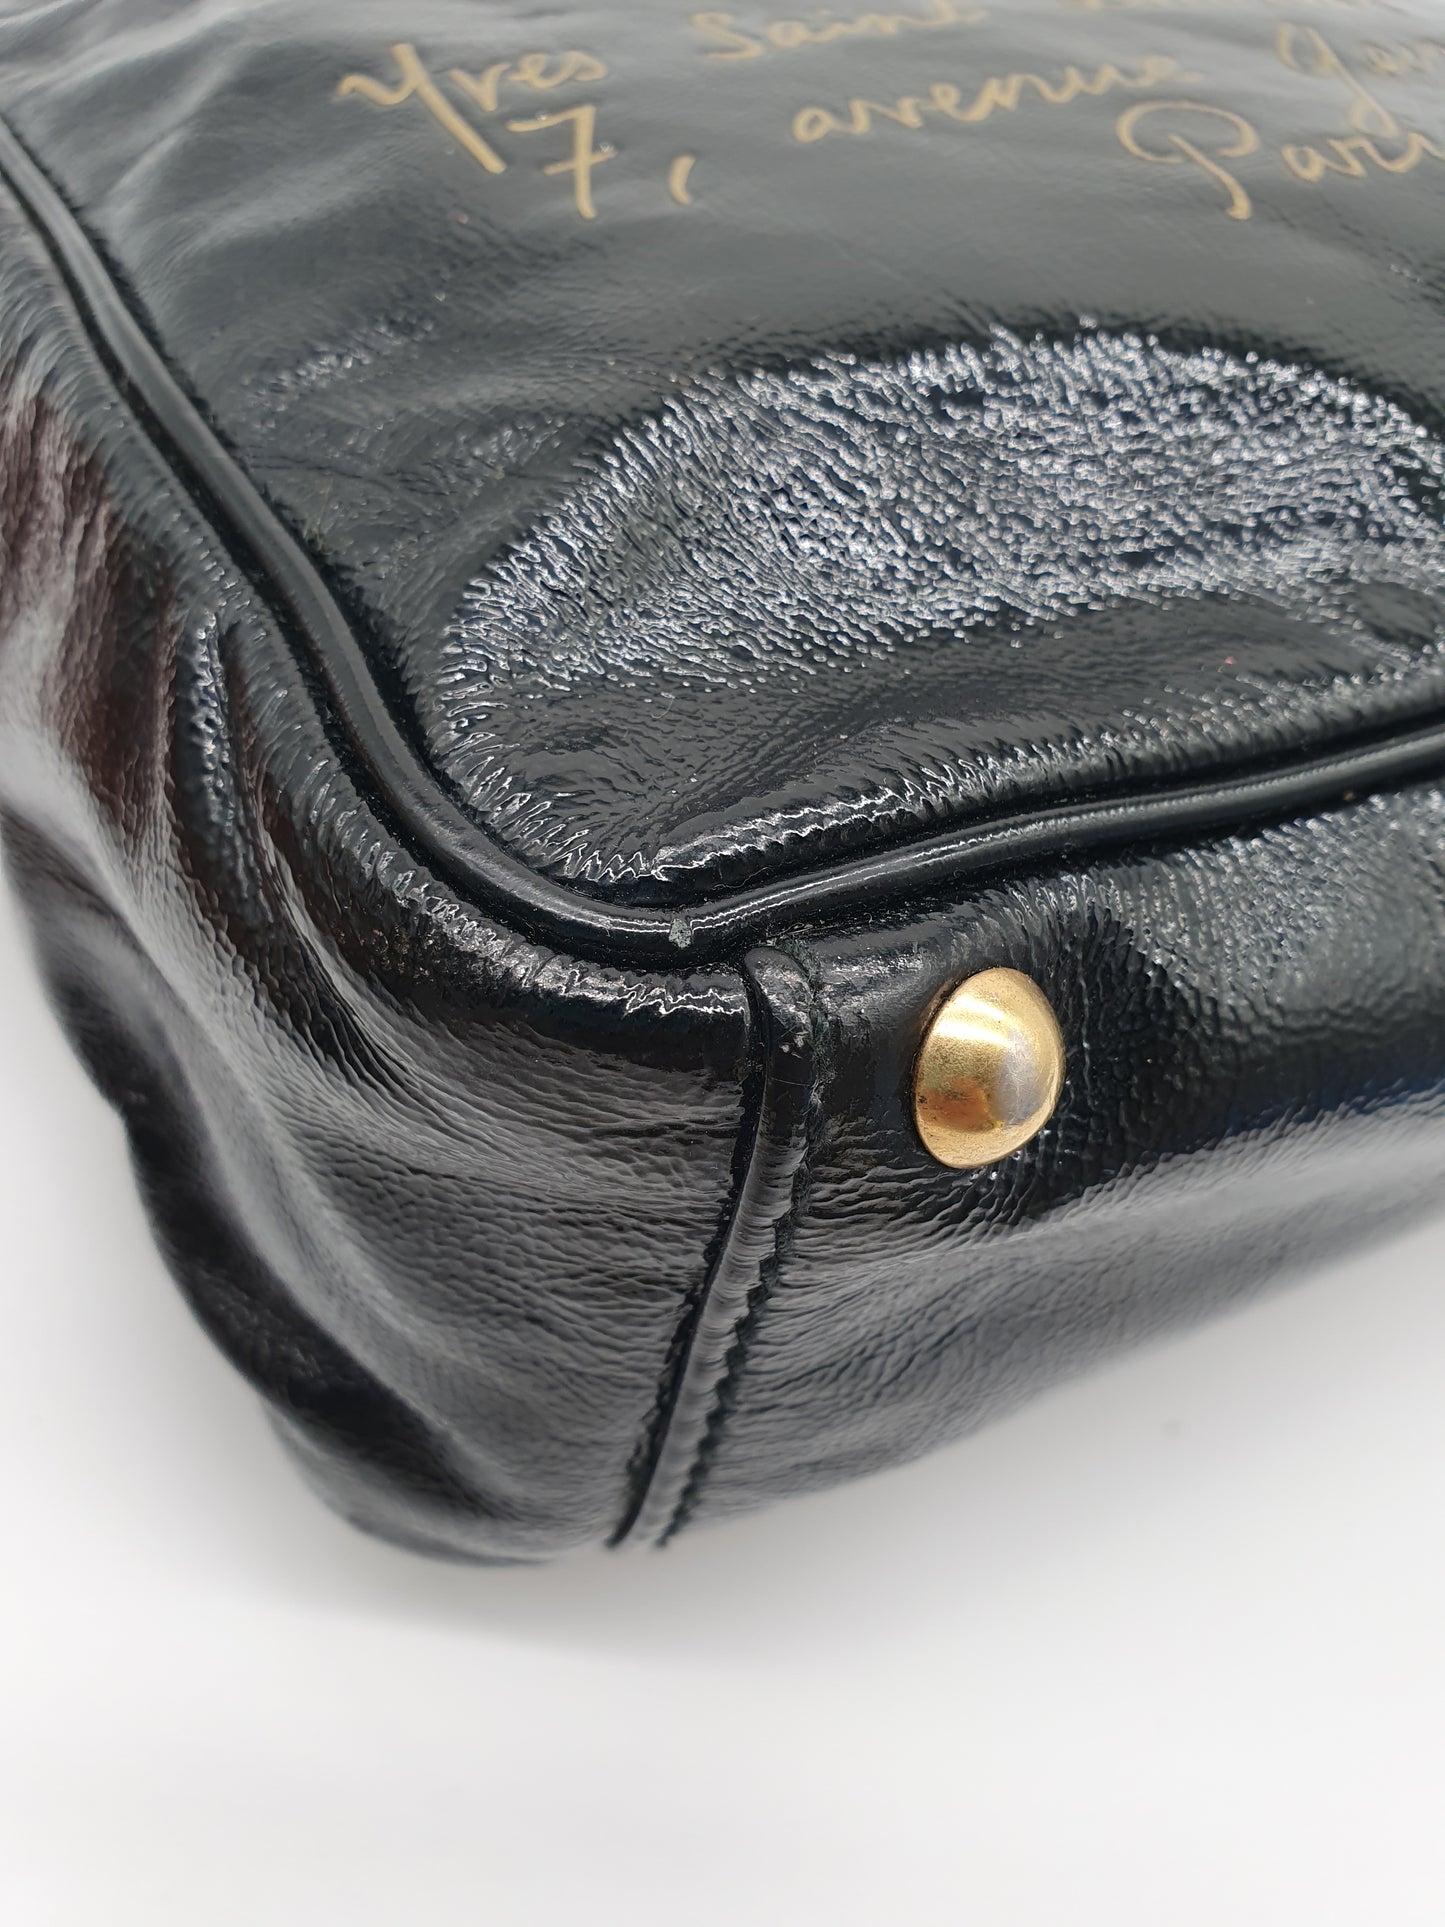 Yves saint Laurent handbag